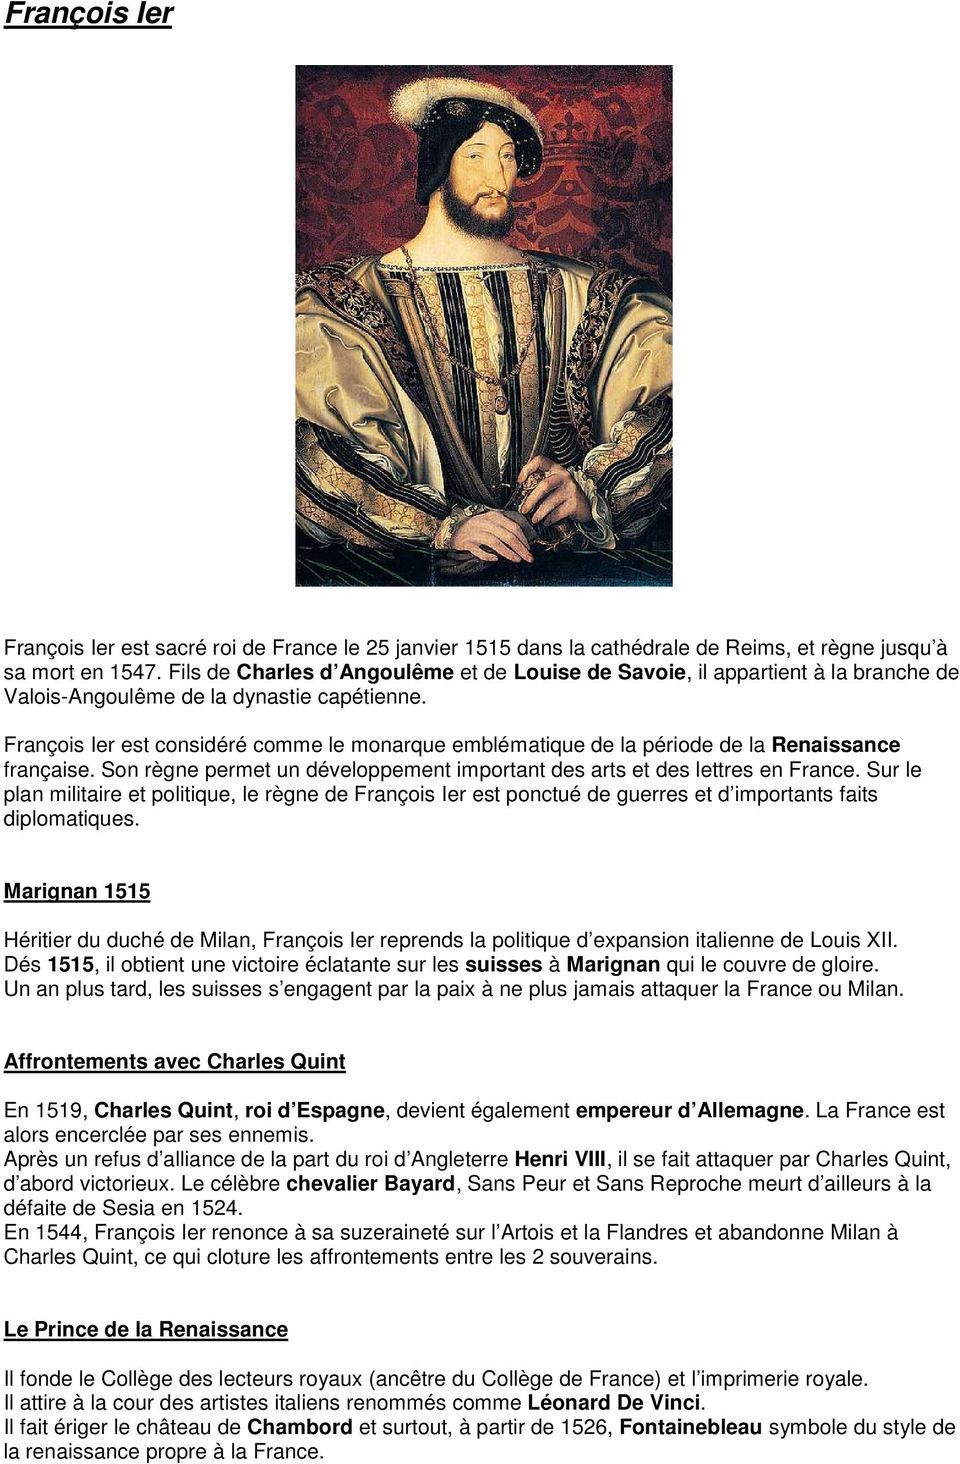 François Ier est considéré comme le monarque emblématique de la période de la Renaissance française. Son règne permet un développement important des arts et des lettres en France.